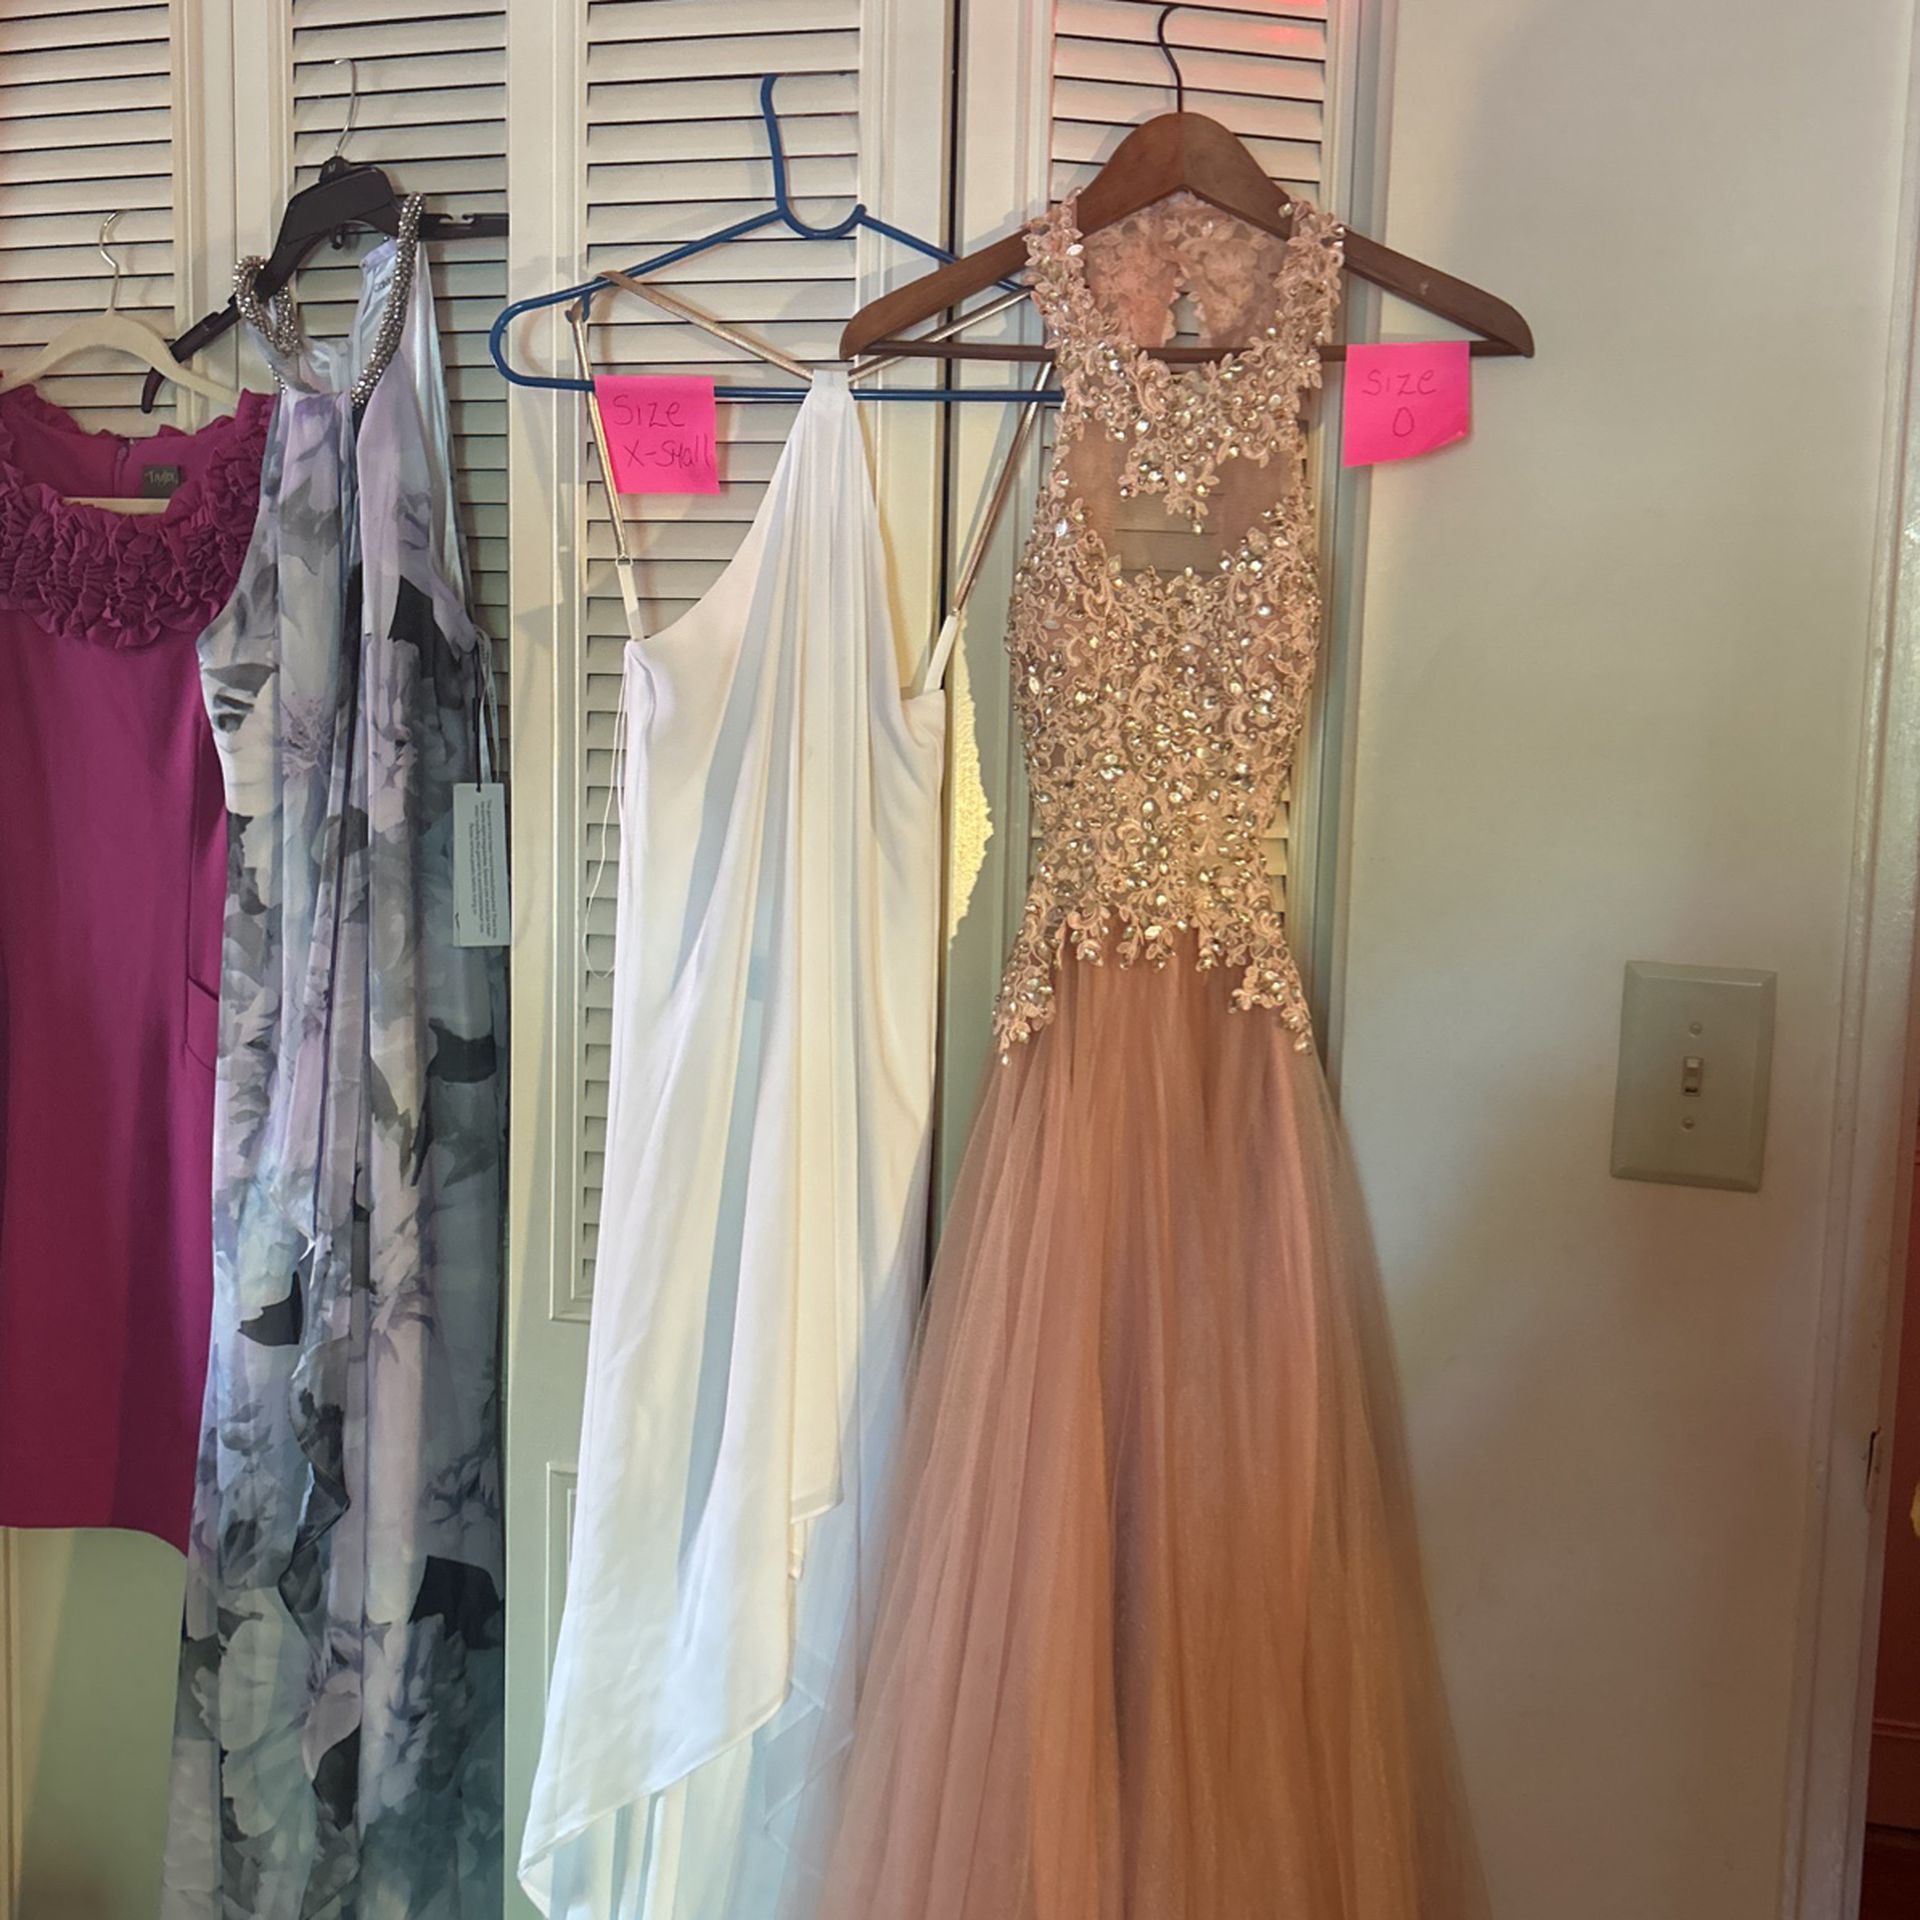 Prom Dress Size 0, White Dress Size X- Small, Print Dress Size 8, Pink Dress Size 8 